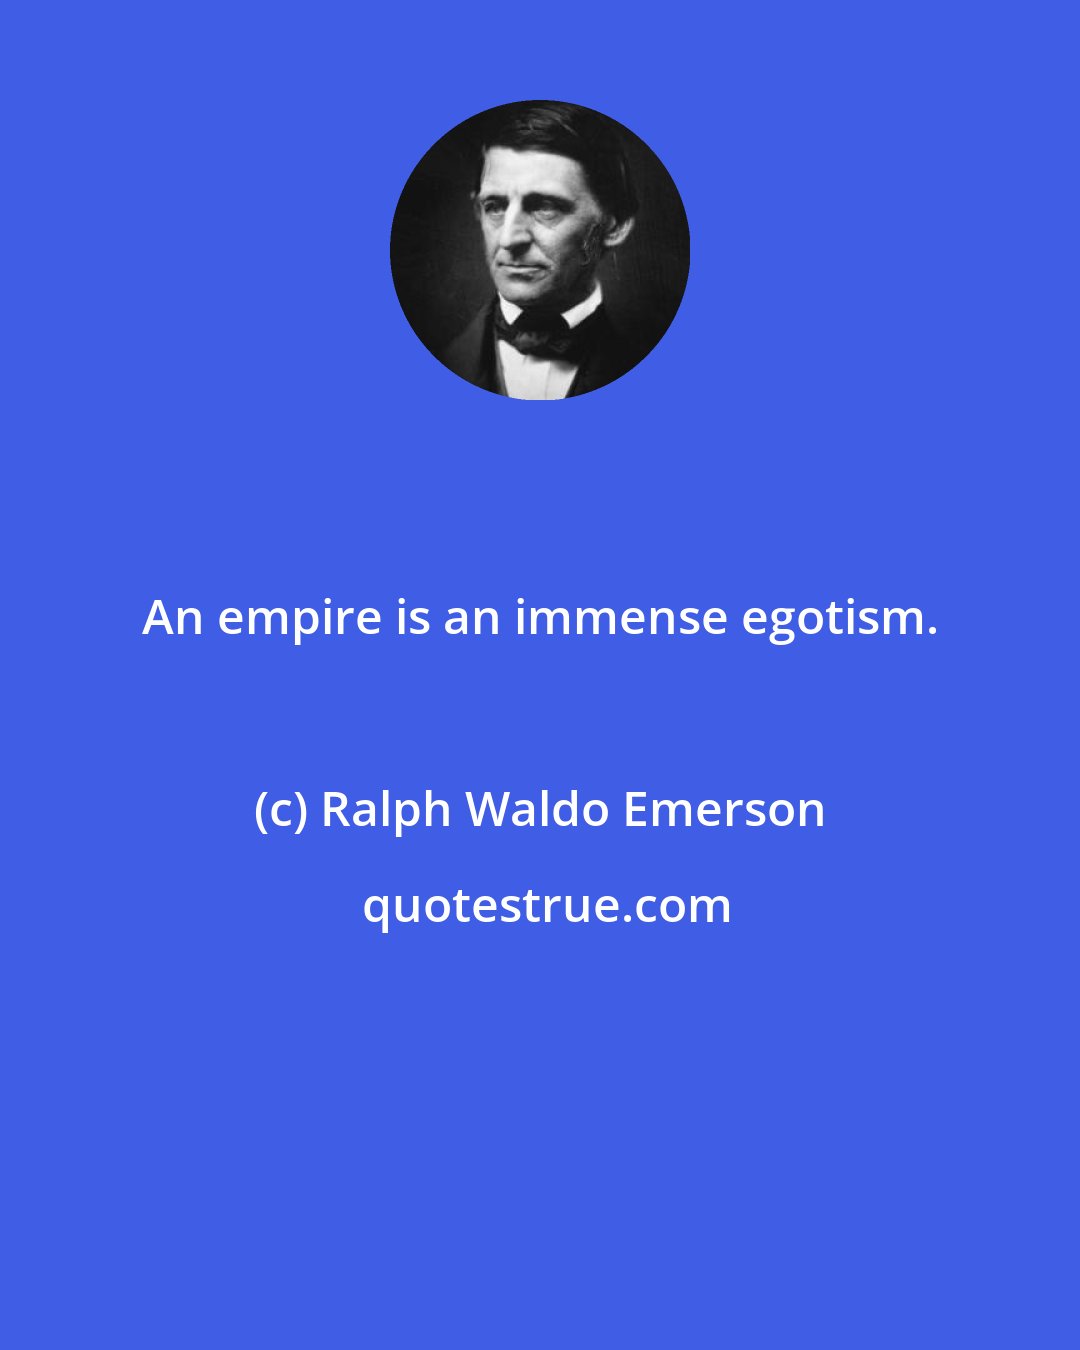 Ralph Waldo Emerson: An empire is an immense egotism.